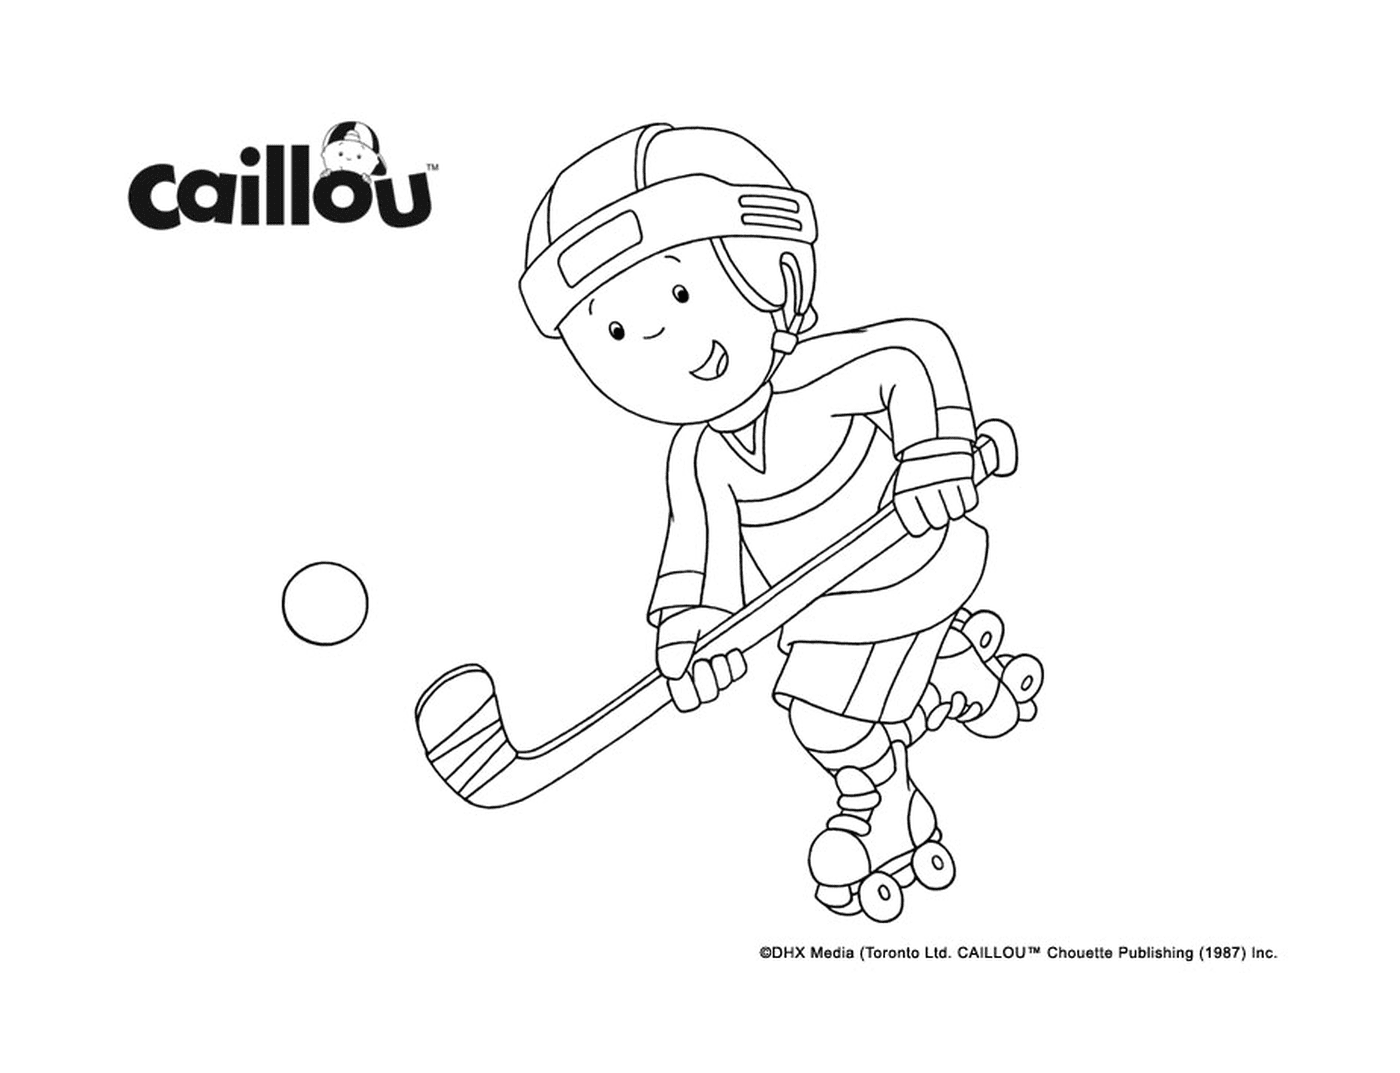  Caillou gioca a hockey per la Stanley Cup 